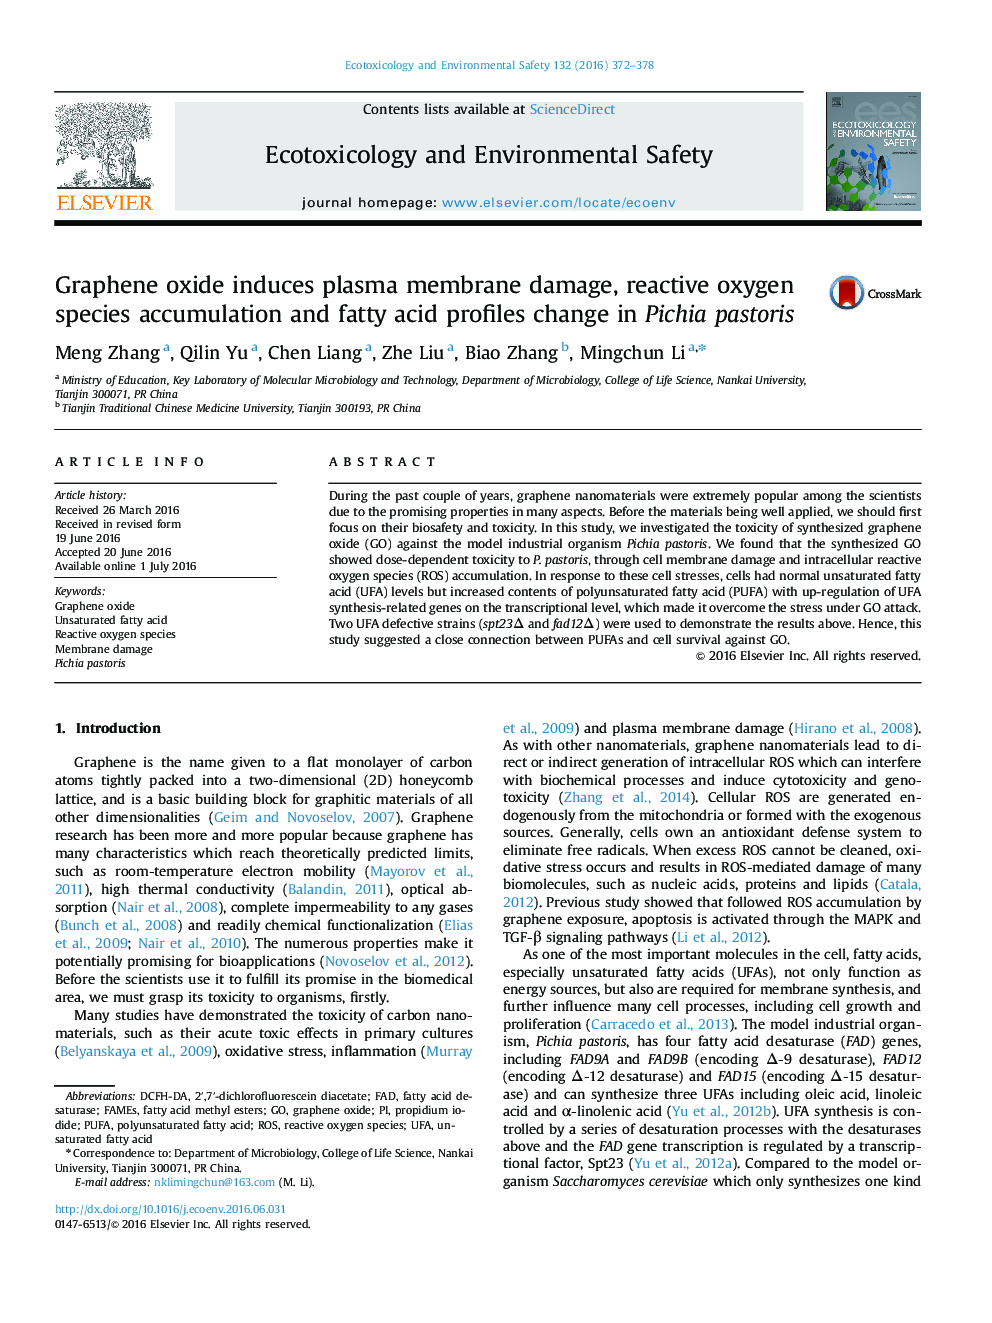 اکسید گرافن باعث آسیب غشای پلاسما، تجمع گونه های اکسیژن راکتیو و تغییر پروفایل اسید چرب در مخمر Pichia pastoris می شود  